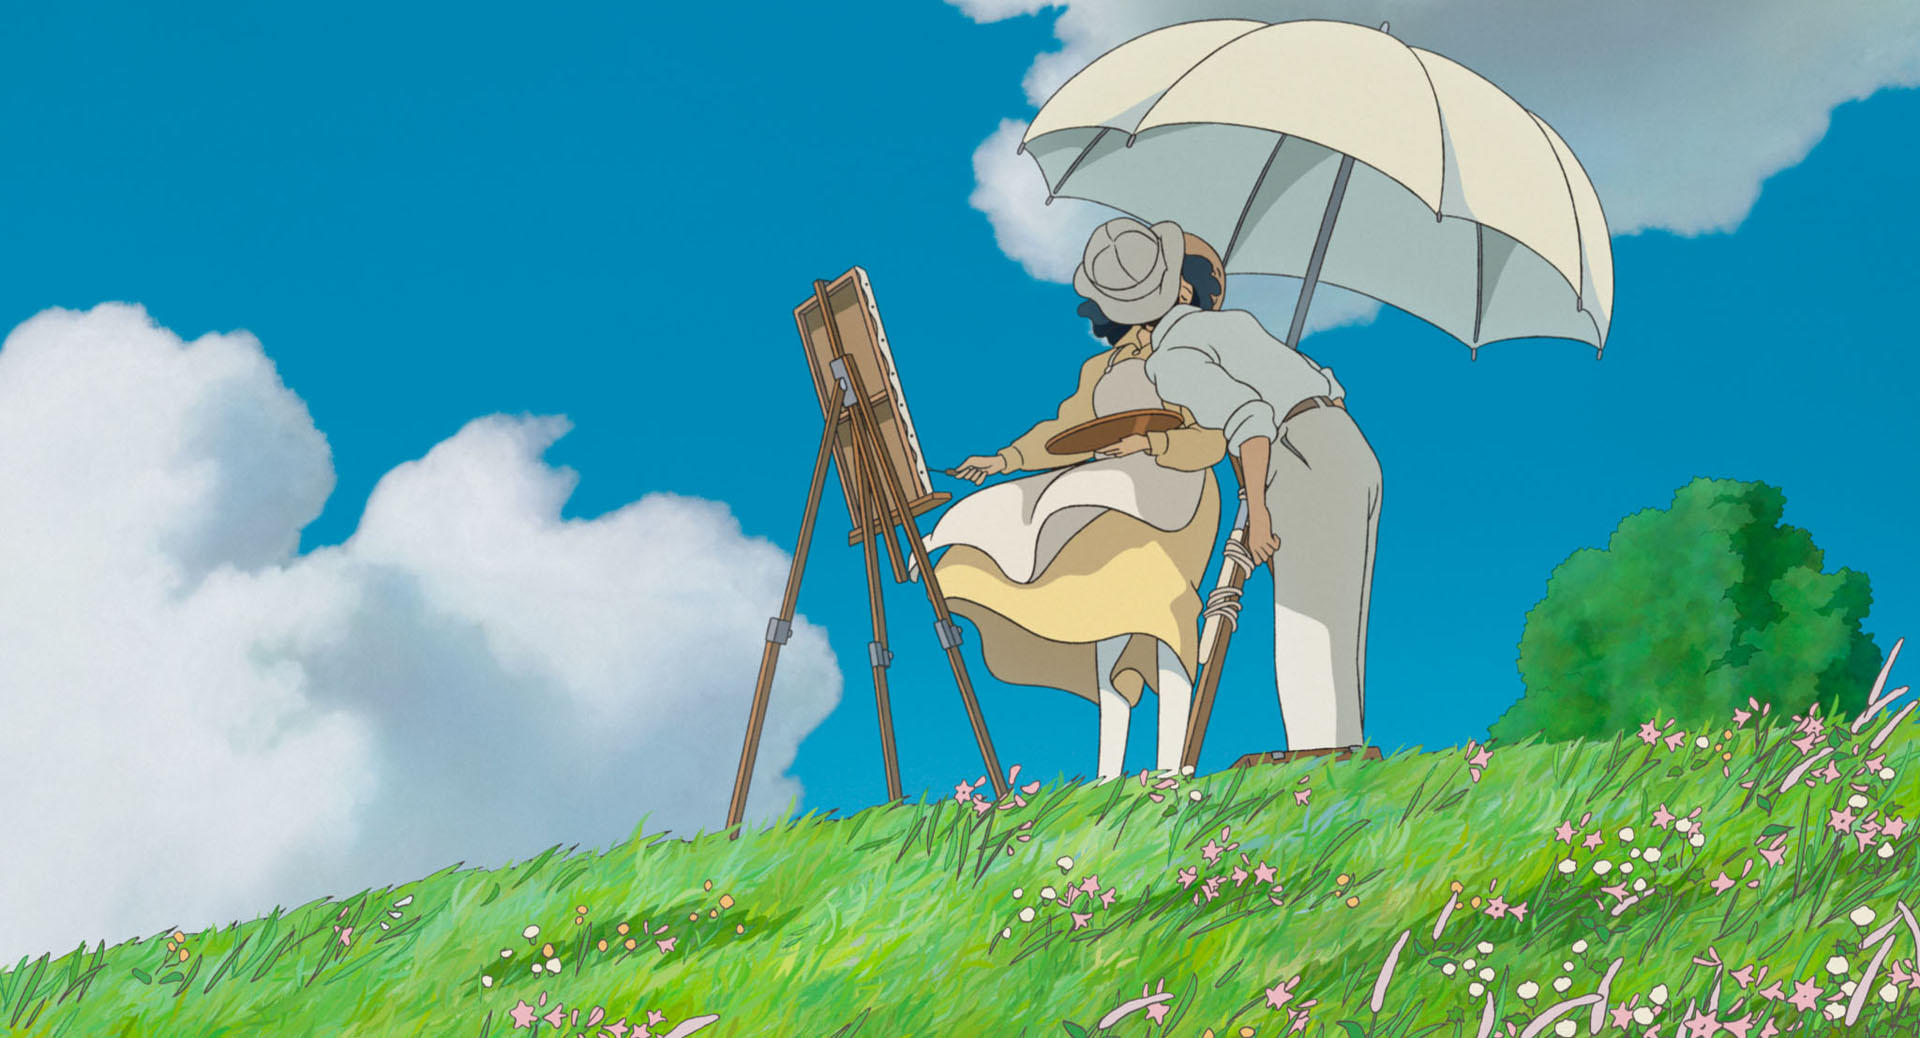 スタジオジブリ制作映画『風立ちぬ』の主題歌「ひこうき雲」のテーマは「死」だった！切ない歌詞に宮崎駿も涙